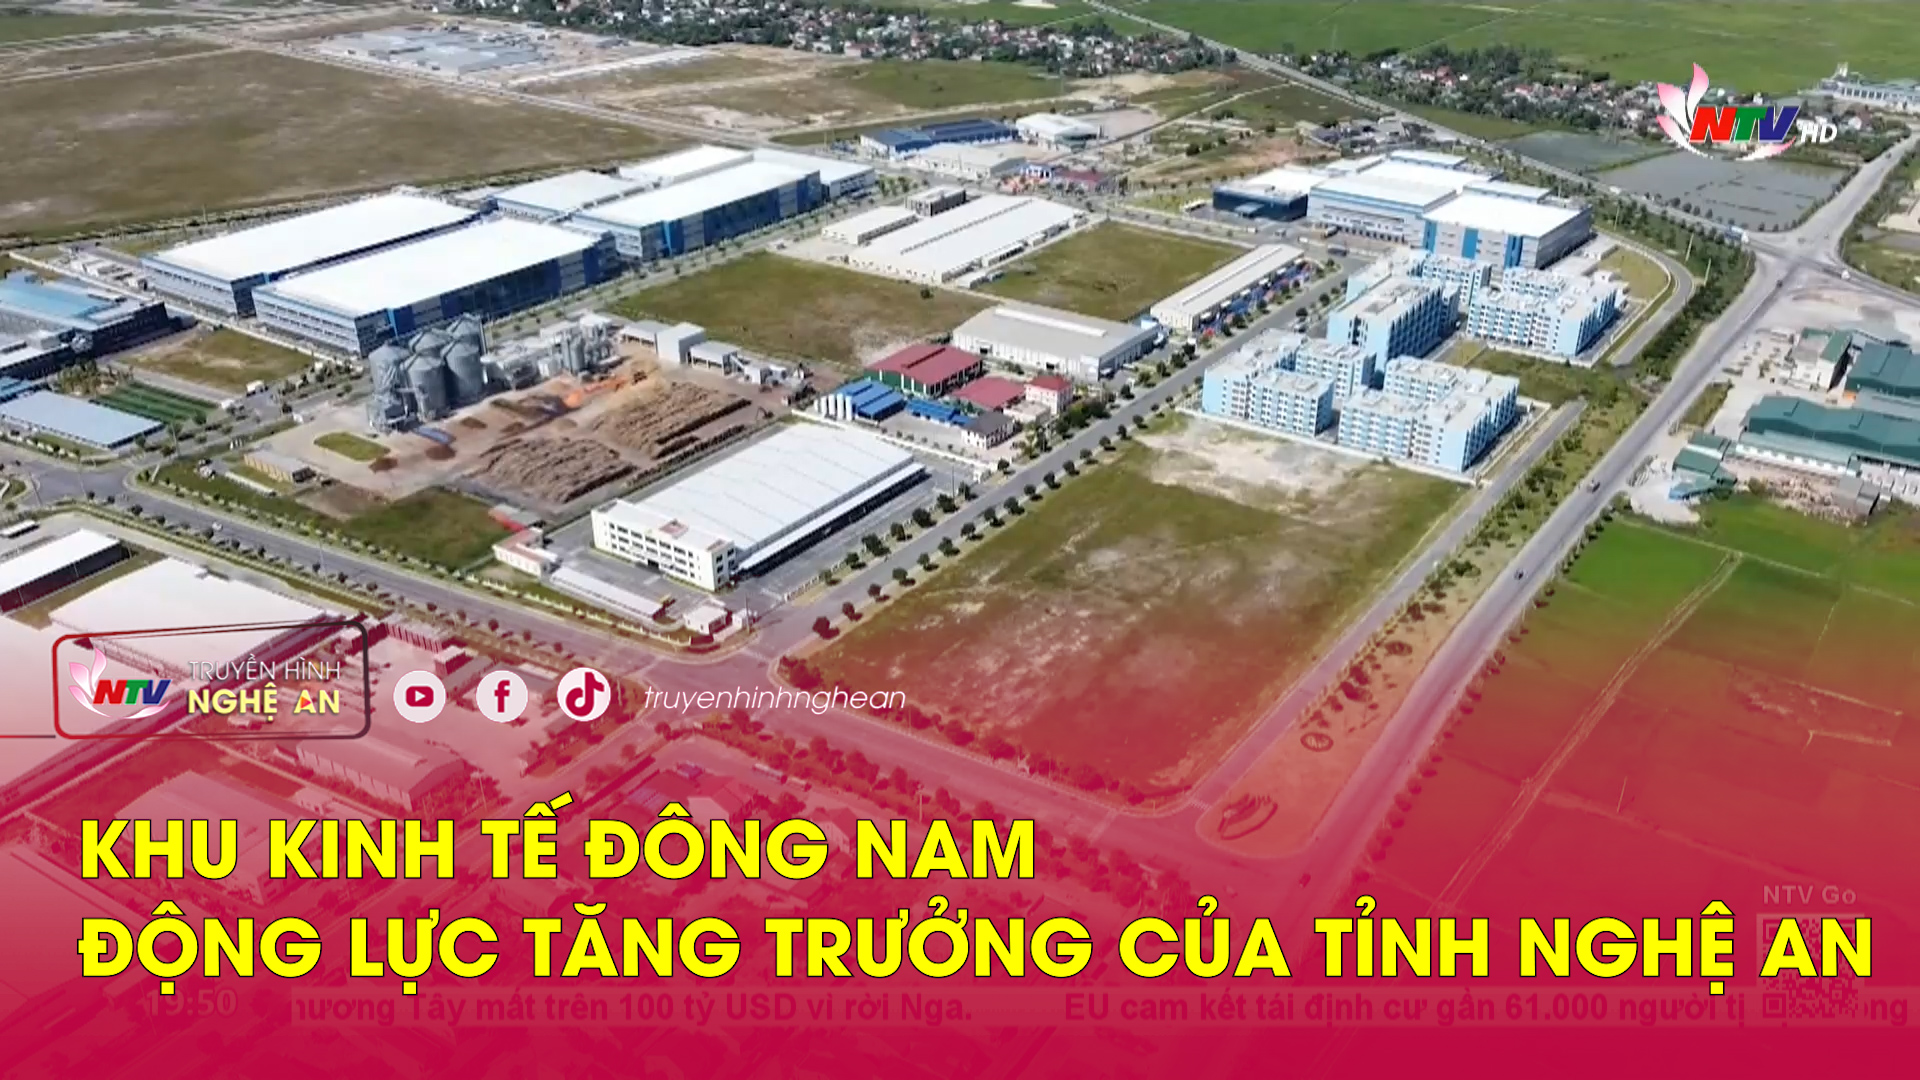 Khu Kinh tế Đông Nam - động lực tăng trưởng của tỉnh Nghệ An